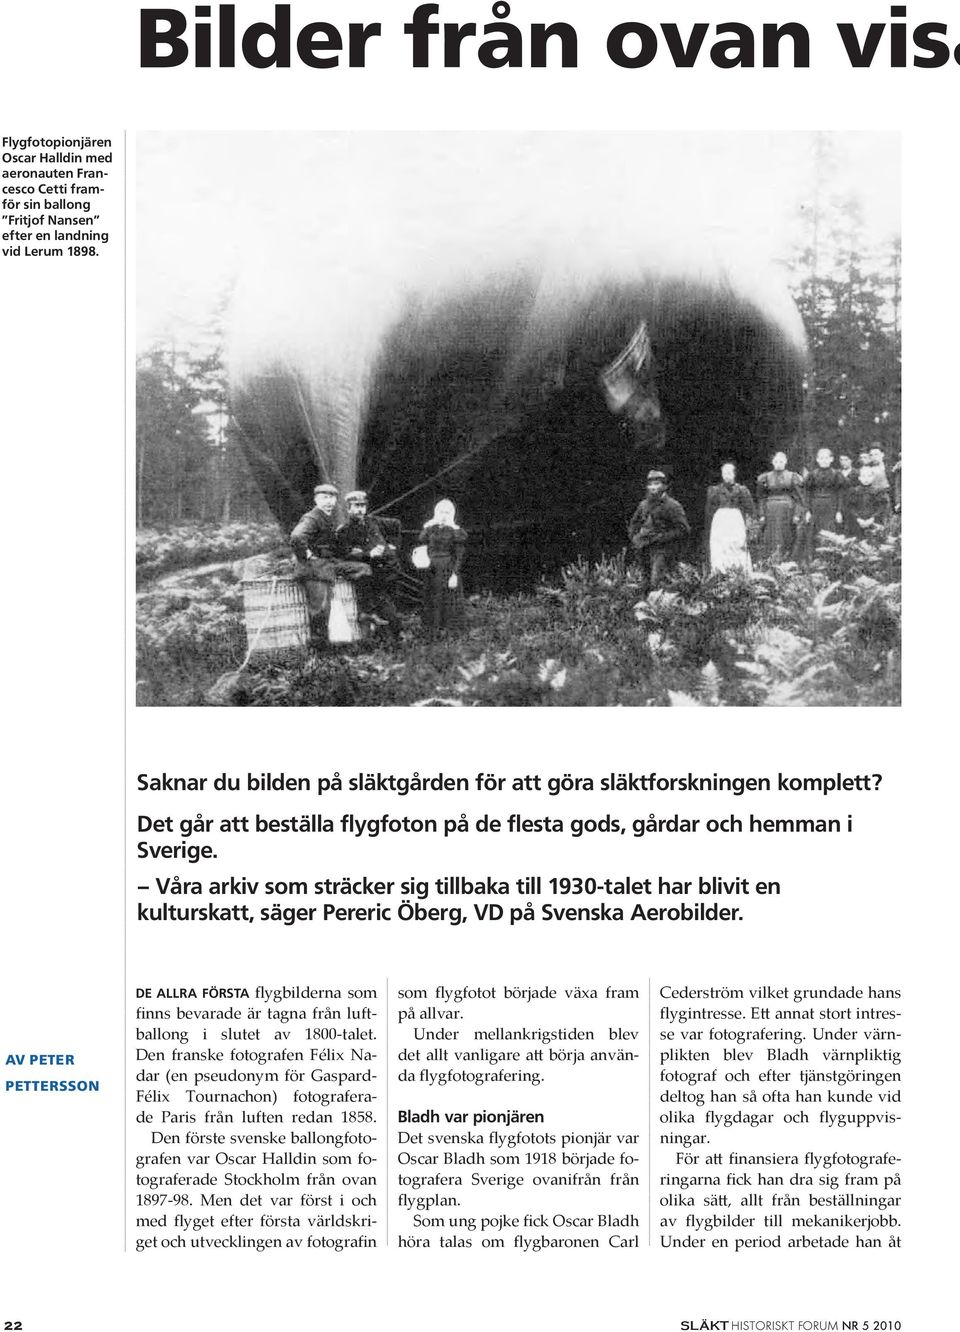 Våra arkiv som sträcker sig tillbaka till 1930-talet har blivit en kulturskatt, säger Pereric Öberg, VD på Svenska Aerobilder.